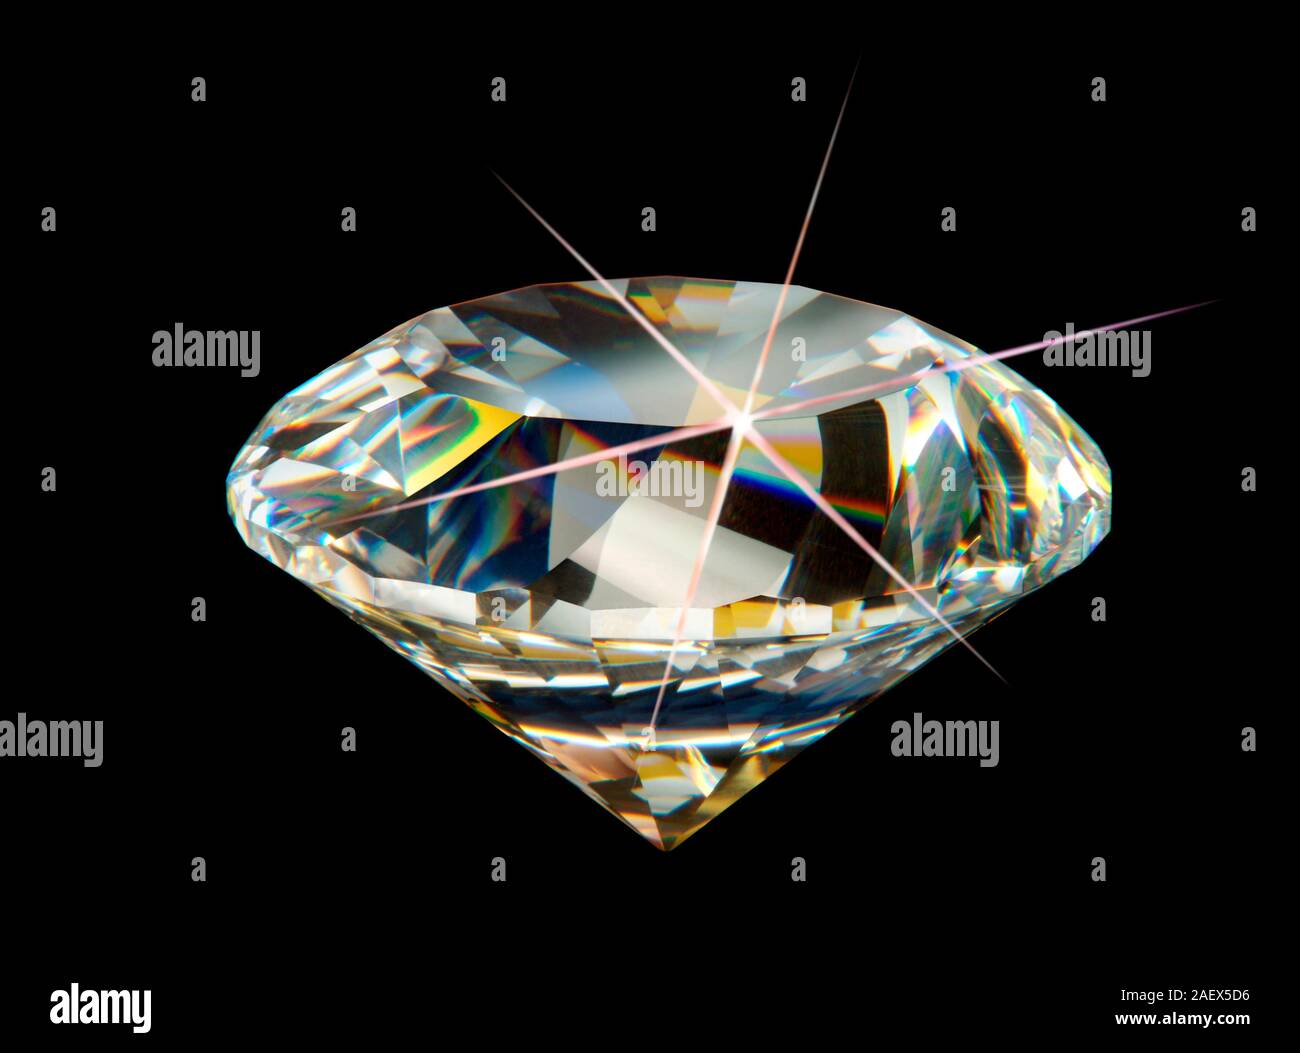 Diamond precious stone. Stock Photo